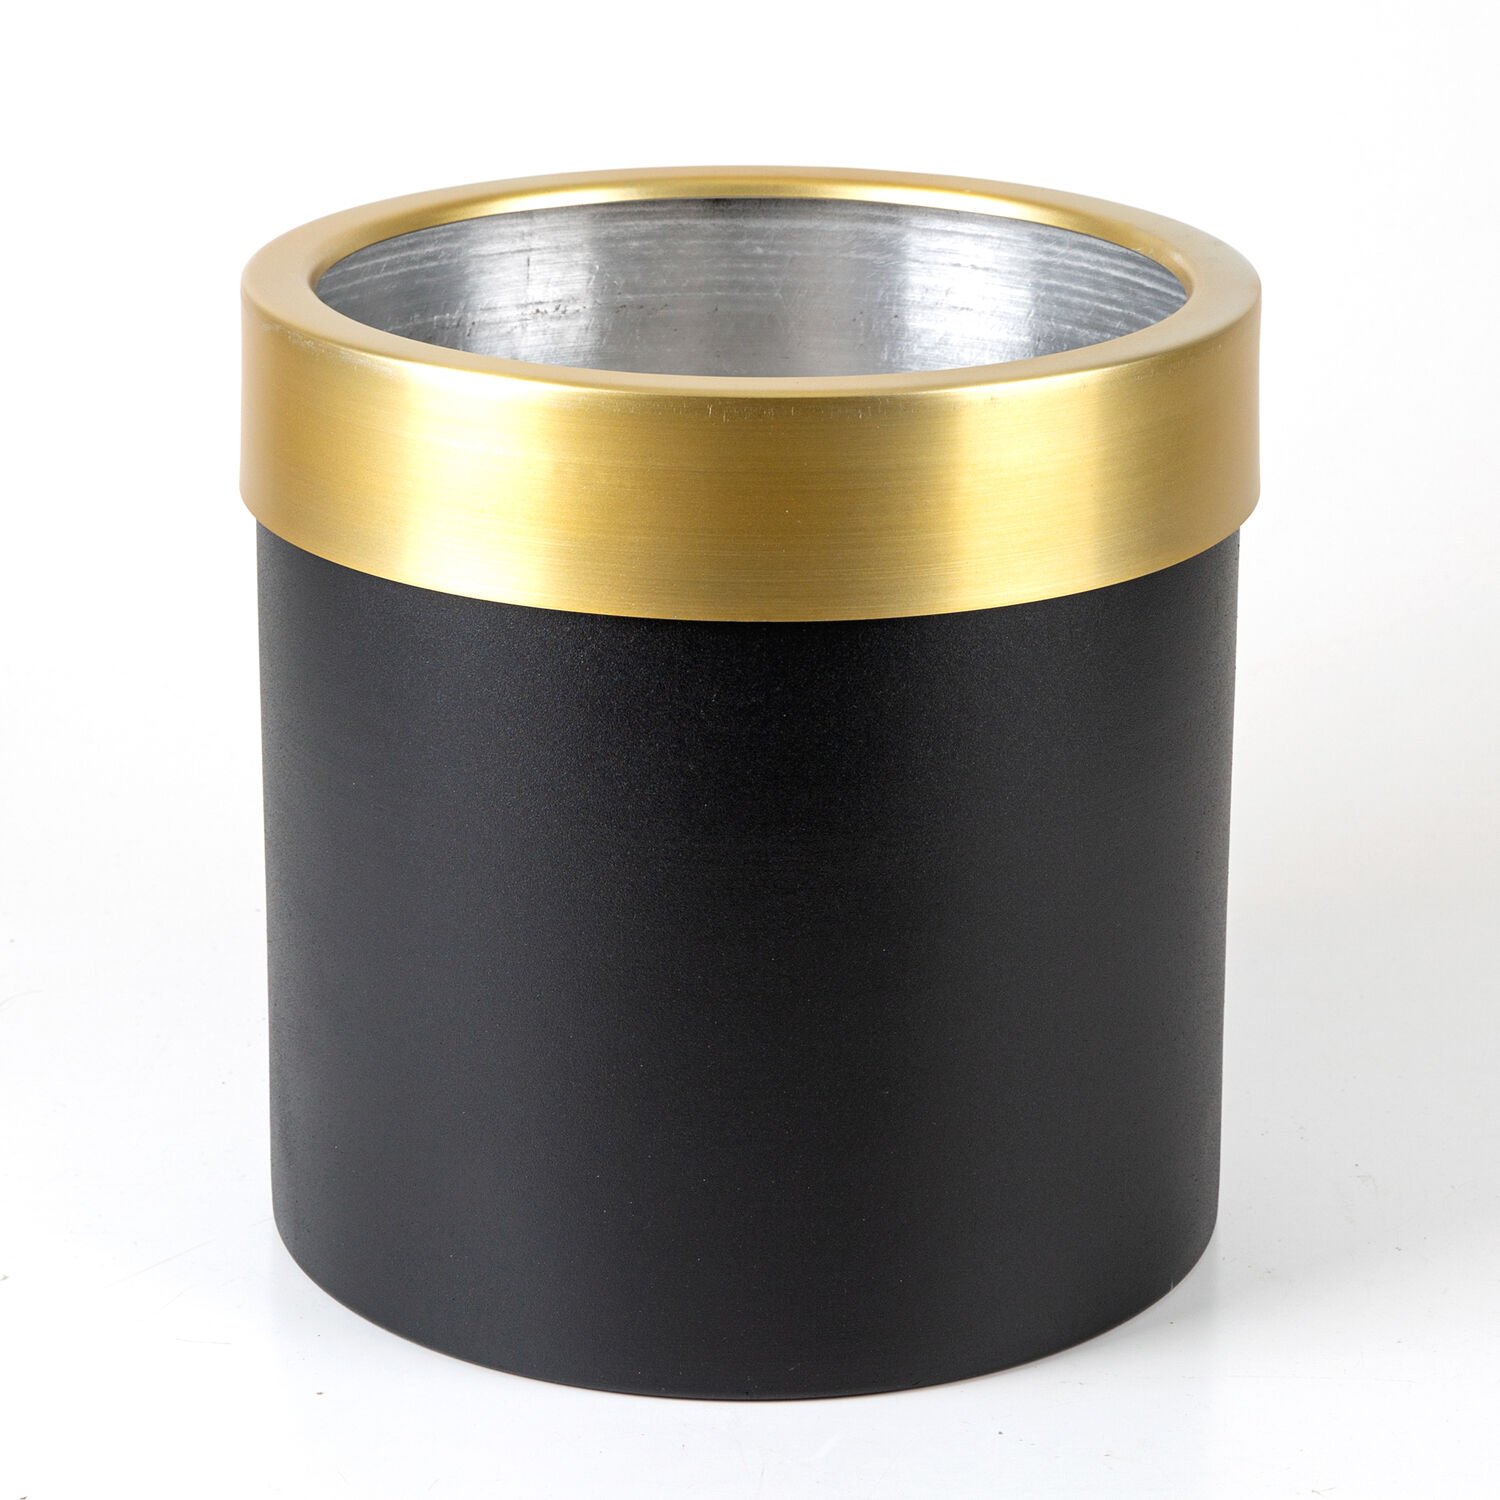 Silindir Alüminyum Saksı Çemberli Siyah-Gold ( Ebat 25X25 Cm.)